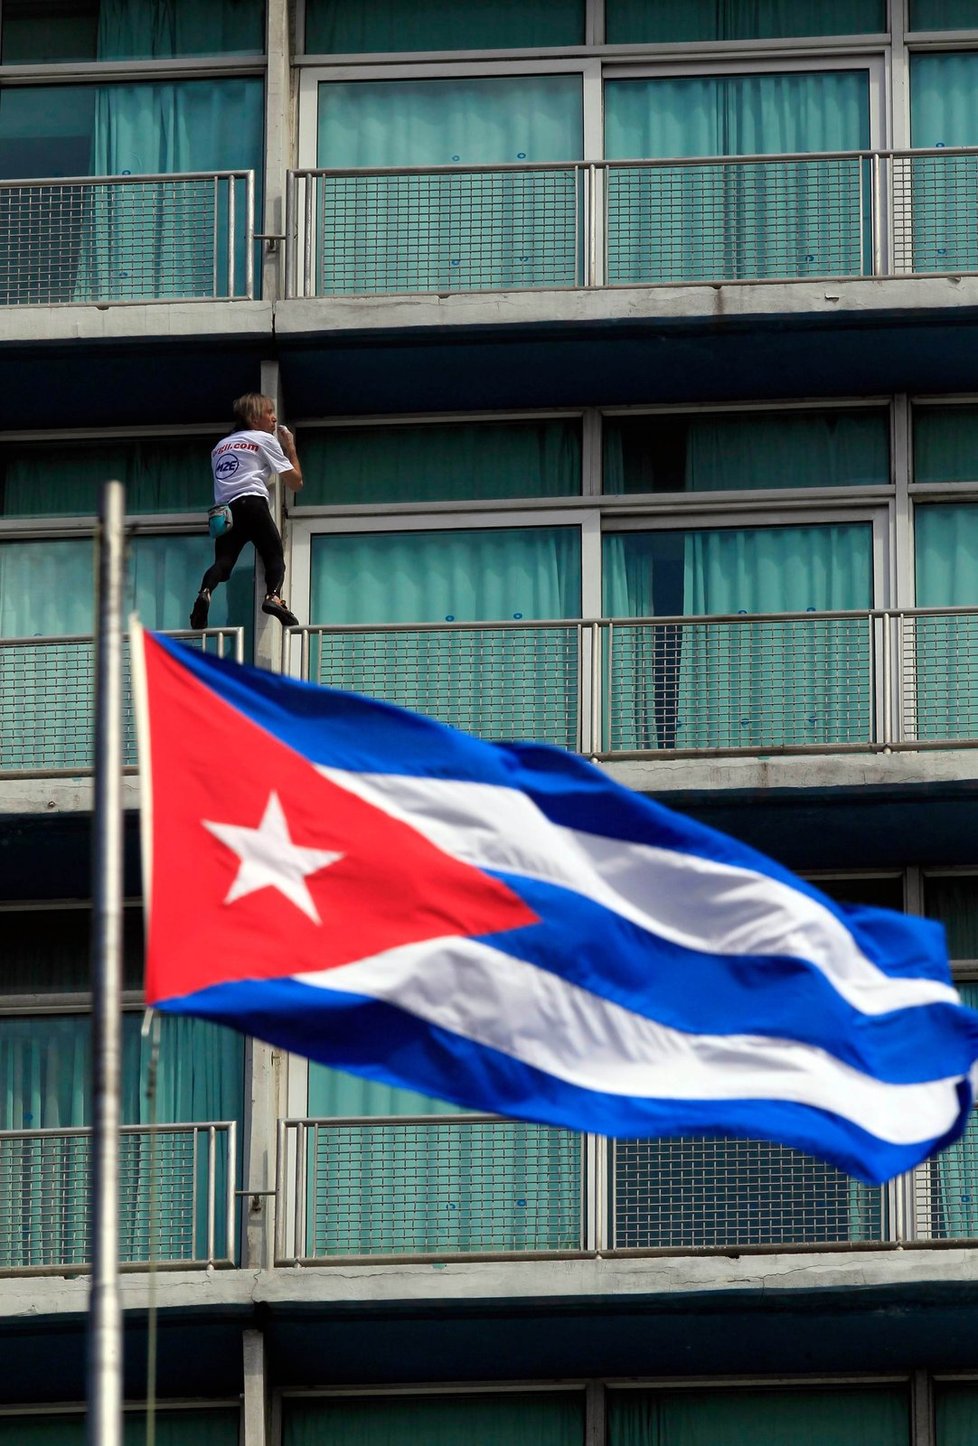 Alain Robert si připsal další zářez: Jeden ze symbolů komunistické Kuby, hotel Habana Libre (Svobodná Havana)